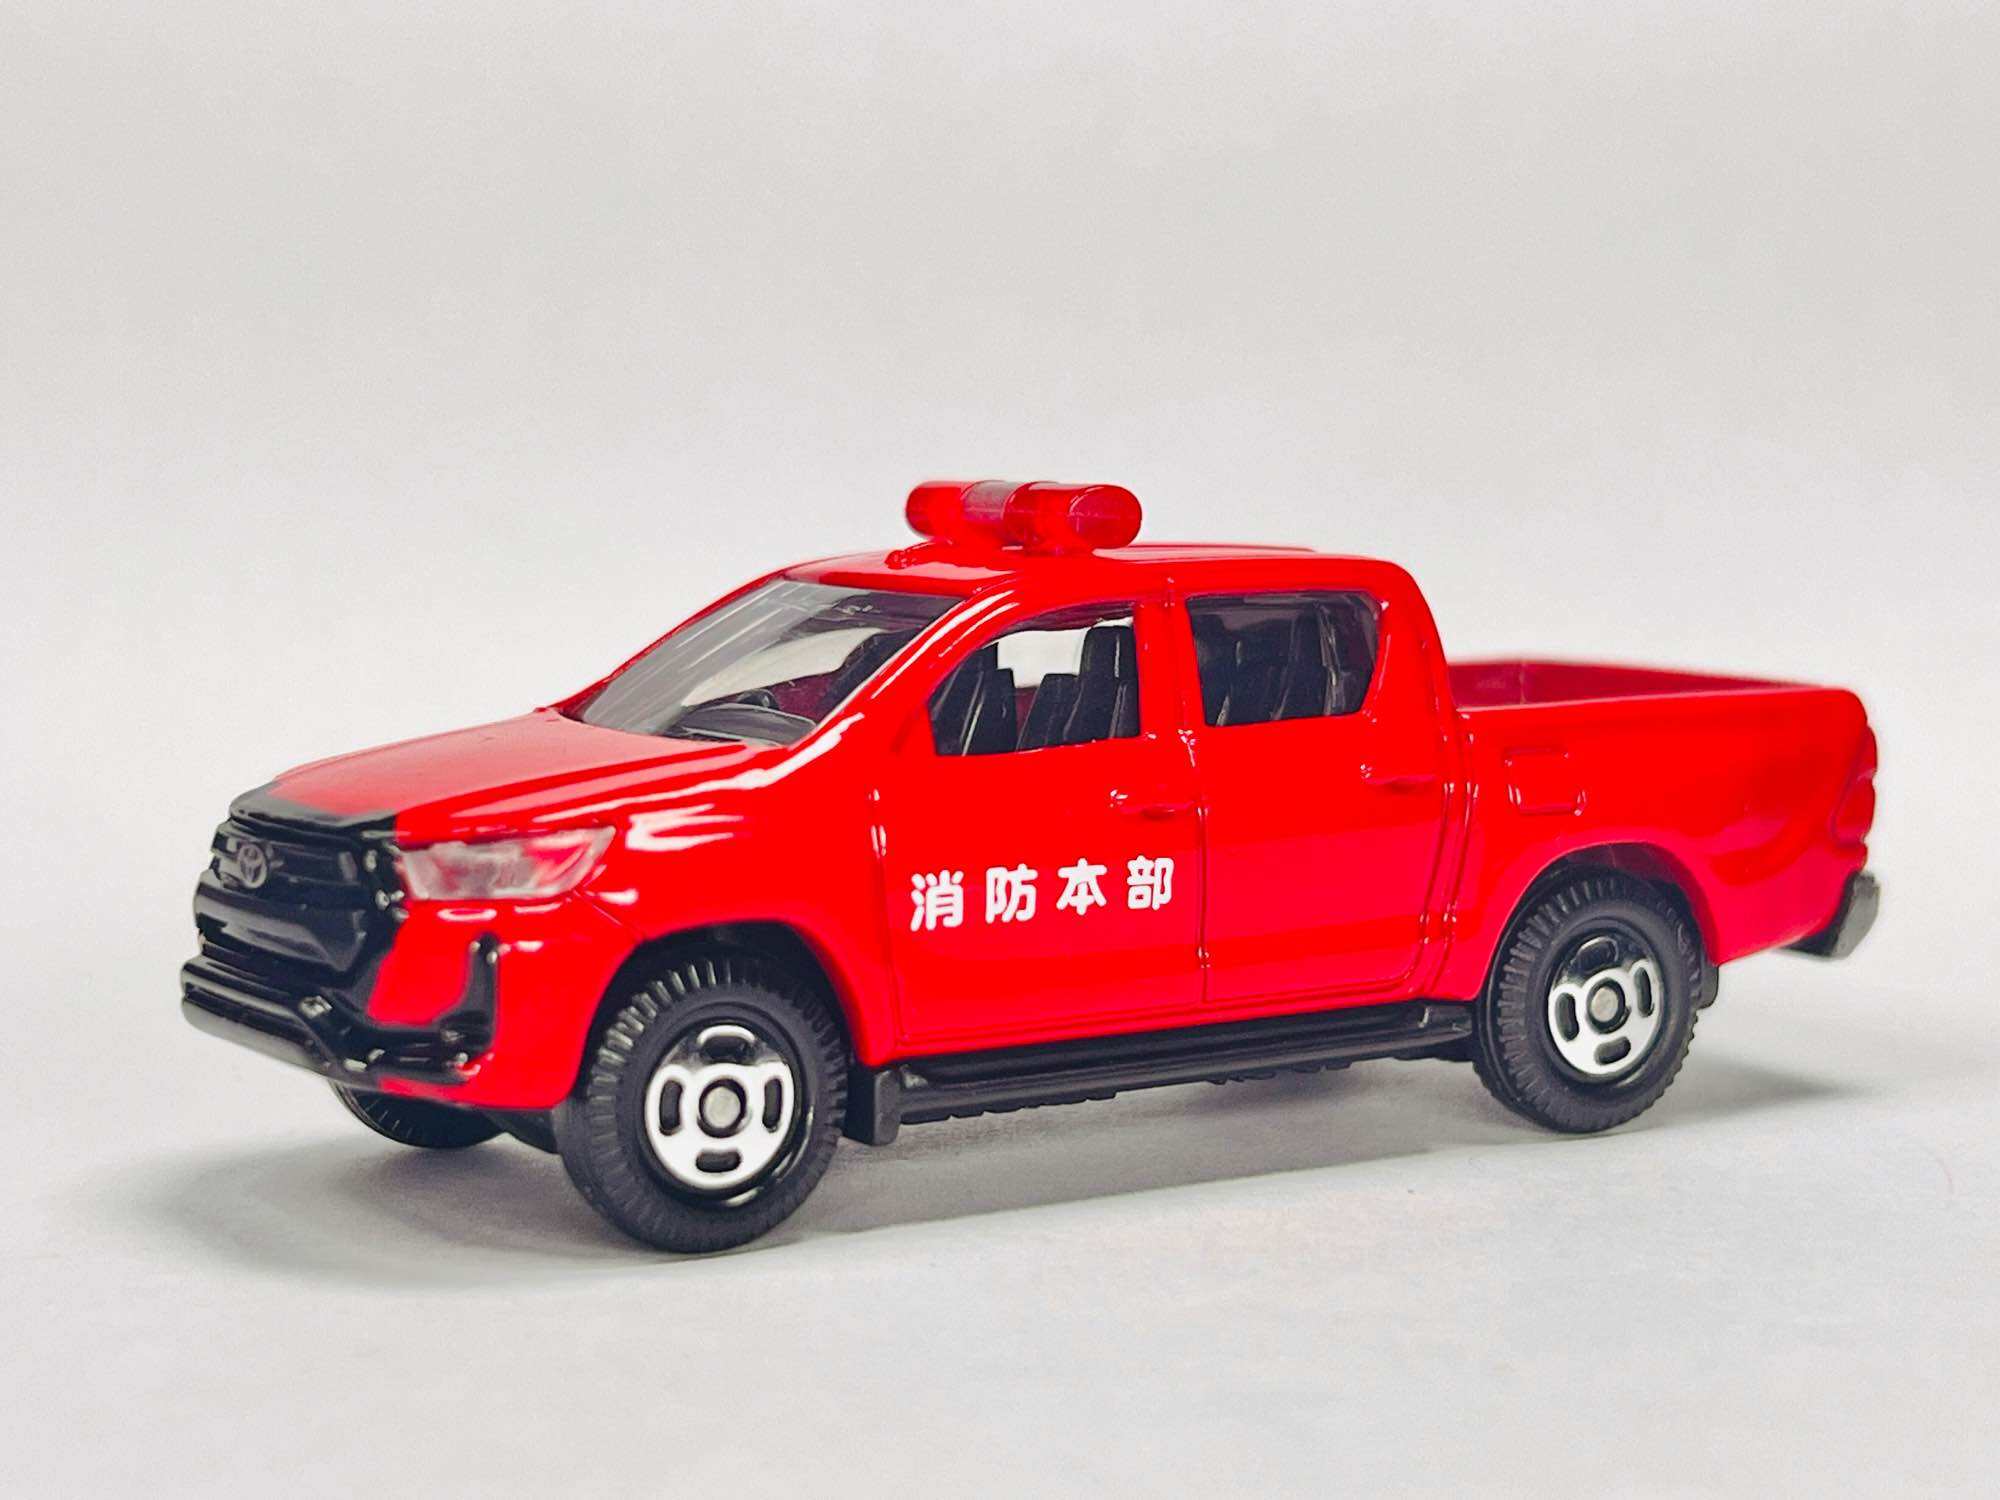 Hobby Store xe mô hình Tomica Toyota Hilux Fire Fighting - Xe Chữa Cháy